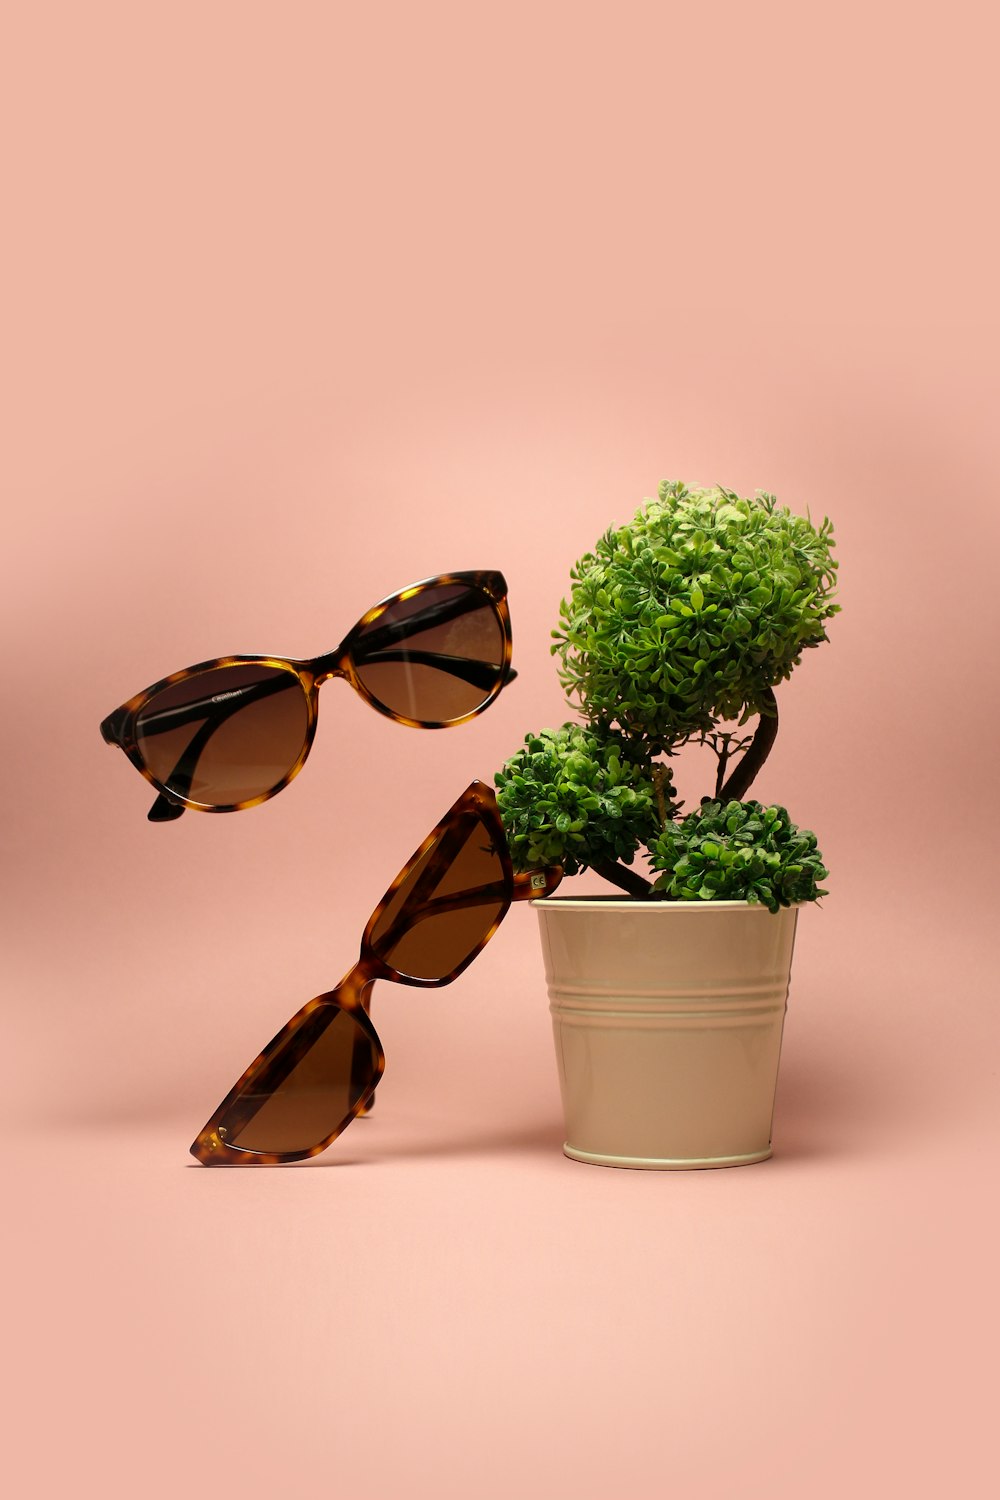 due occhiali da sole marroni accanto alla pianta a foglia verde